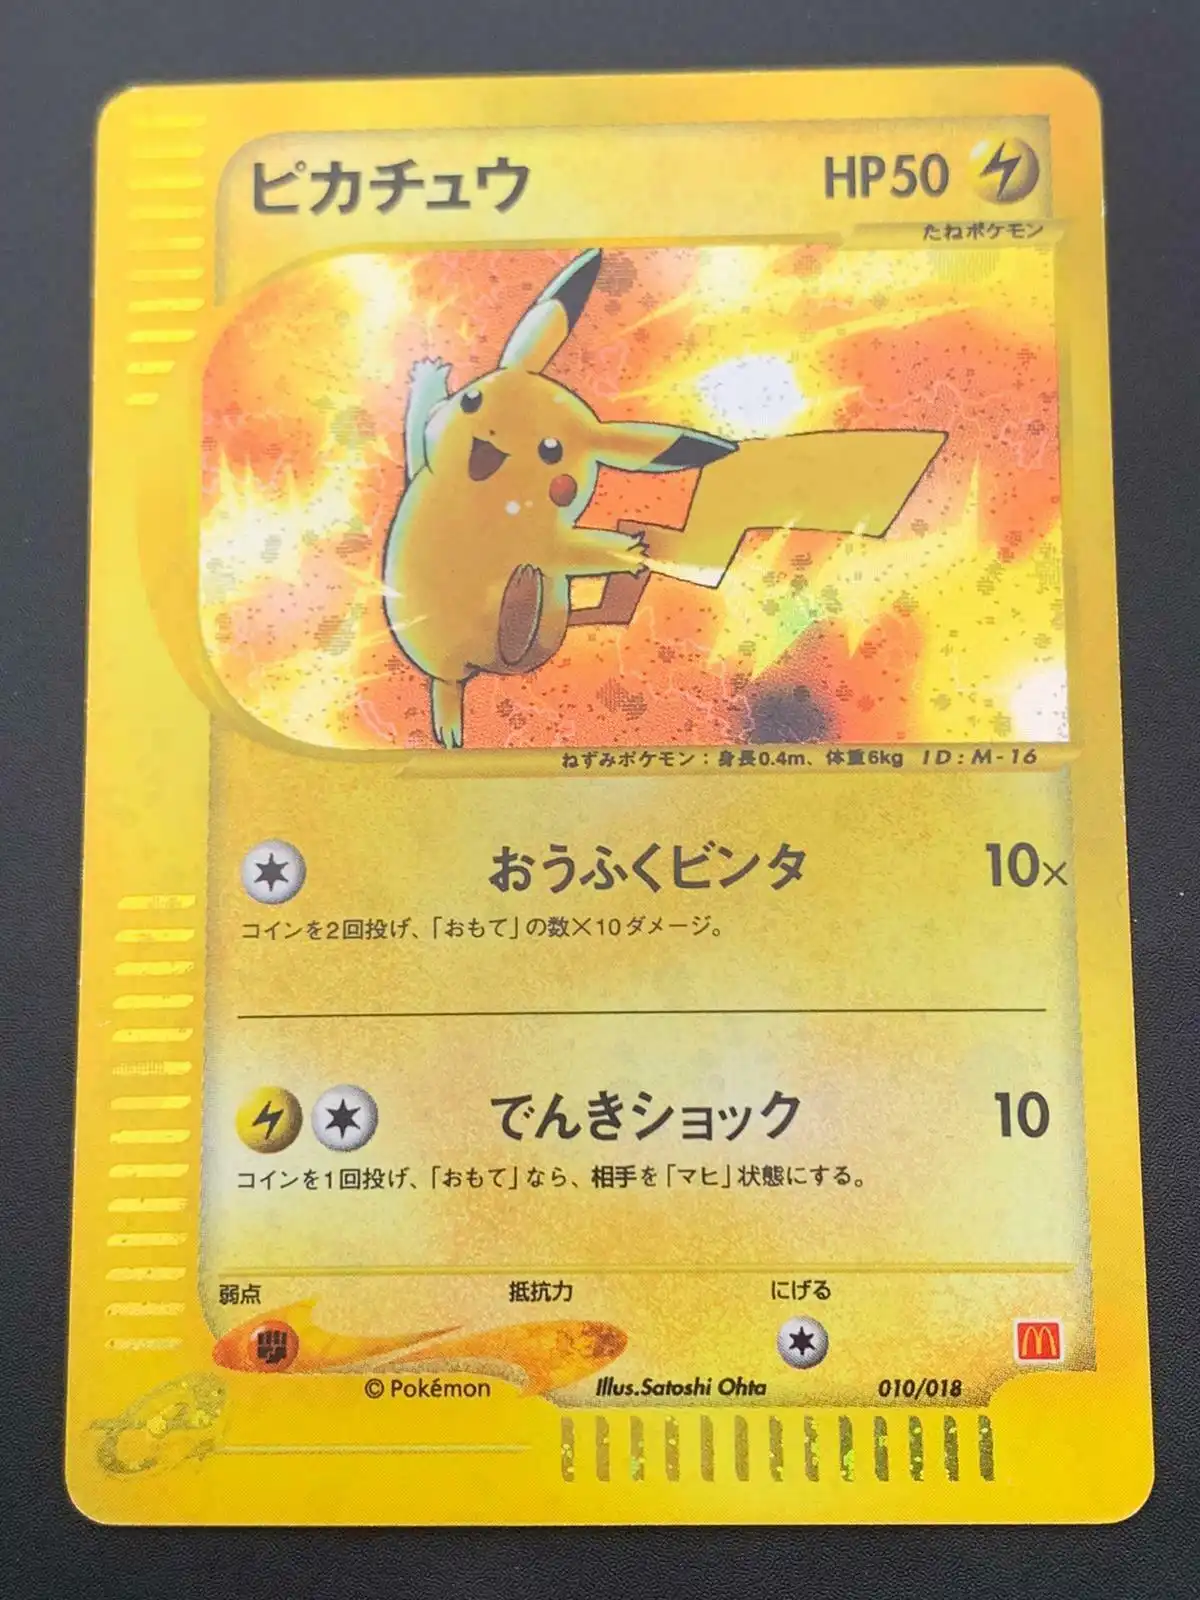 PokemonPikachu Holo2002 Japanese Mcdonalds Promo Cards ...